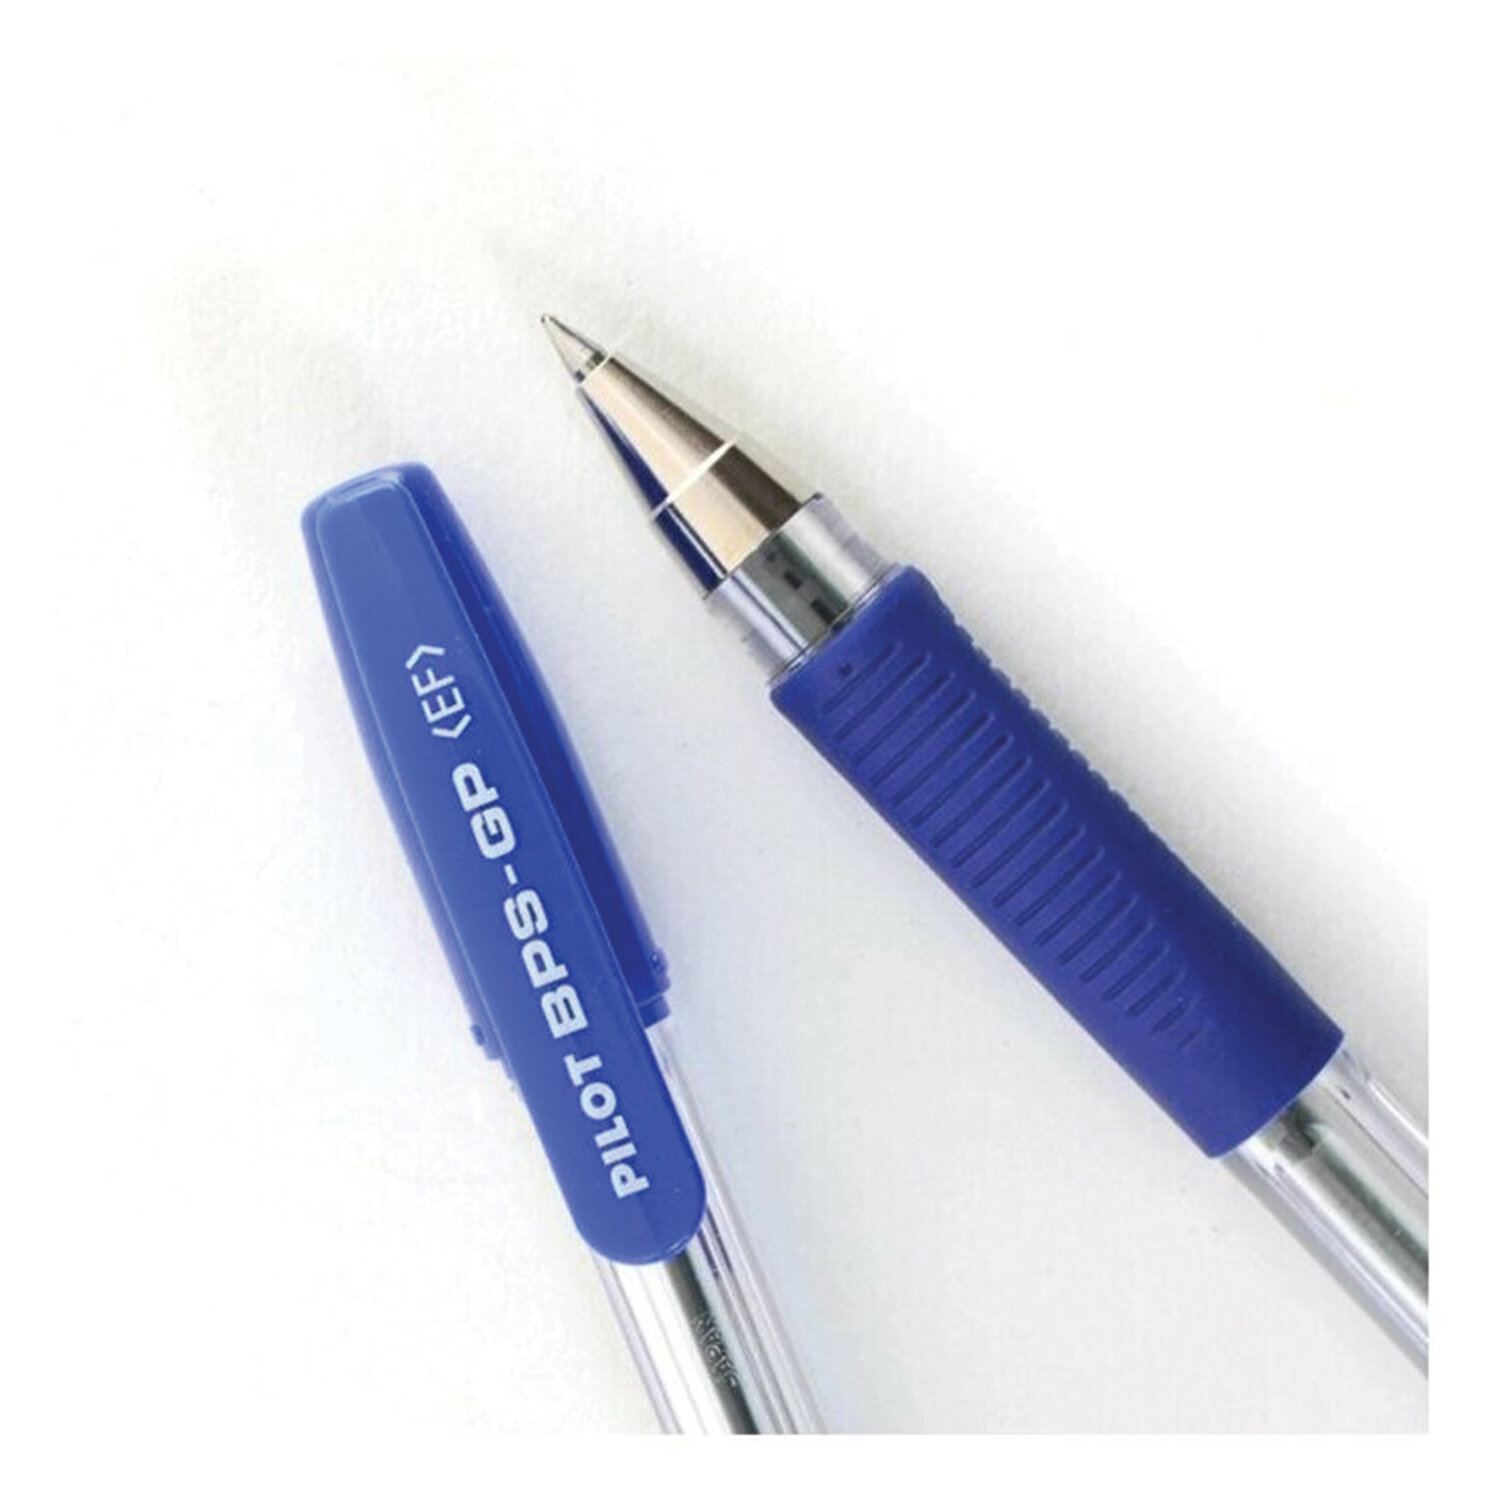 картинка Ручка шариковая масляная, 0,5 мм, синяя, корп. прозрачный, грип, "BPS-GP", Pilot, BPS-GP-EF-L от магазина Альфанит в Кунгуре